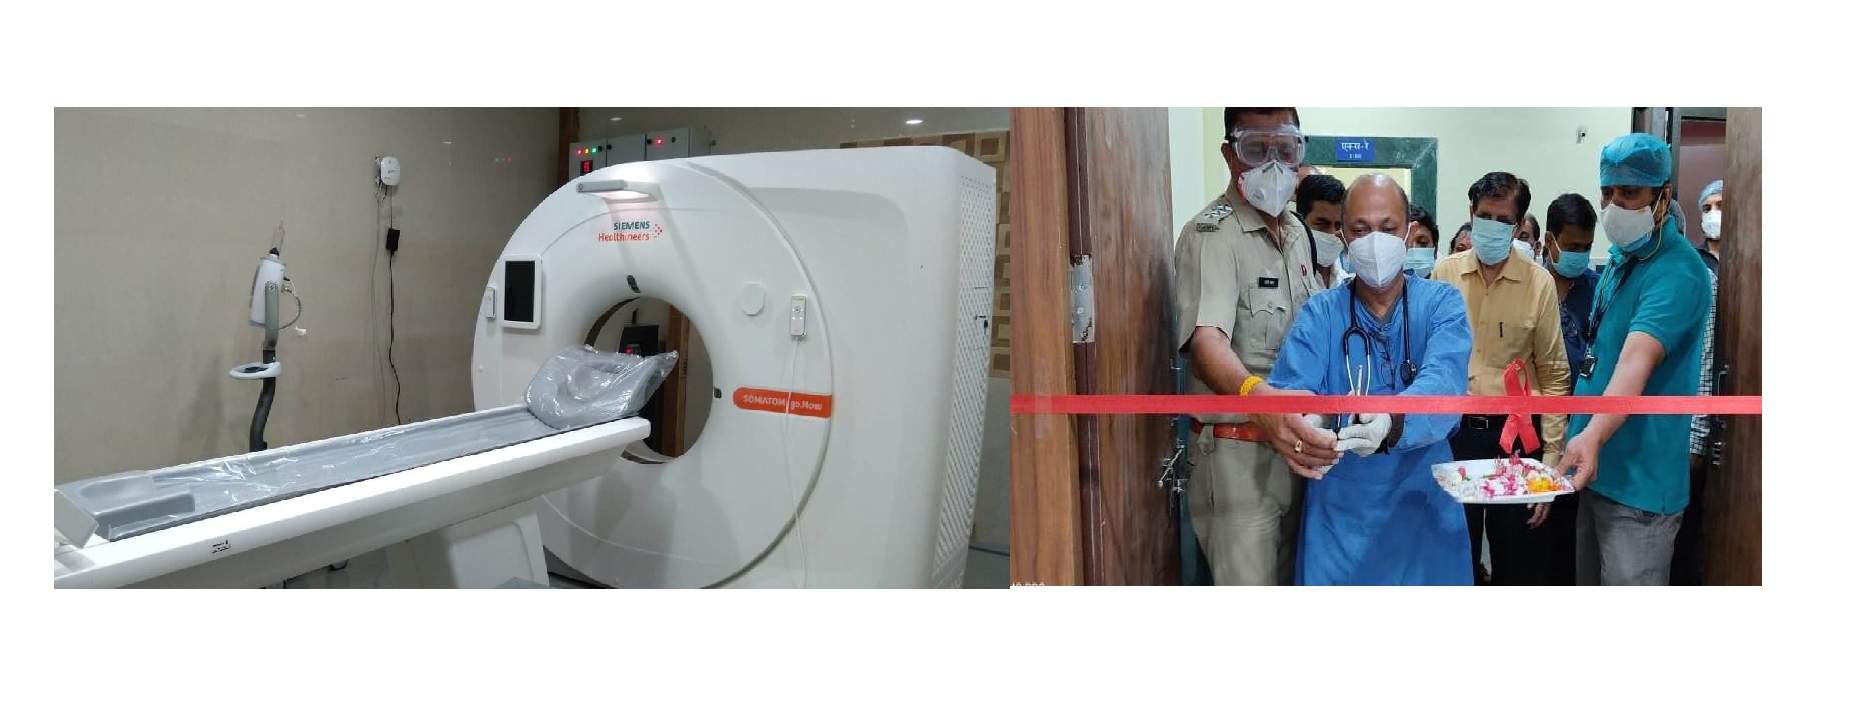 Noon Hospital Now Own “Siemens 96 Slice CT Scan”